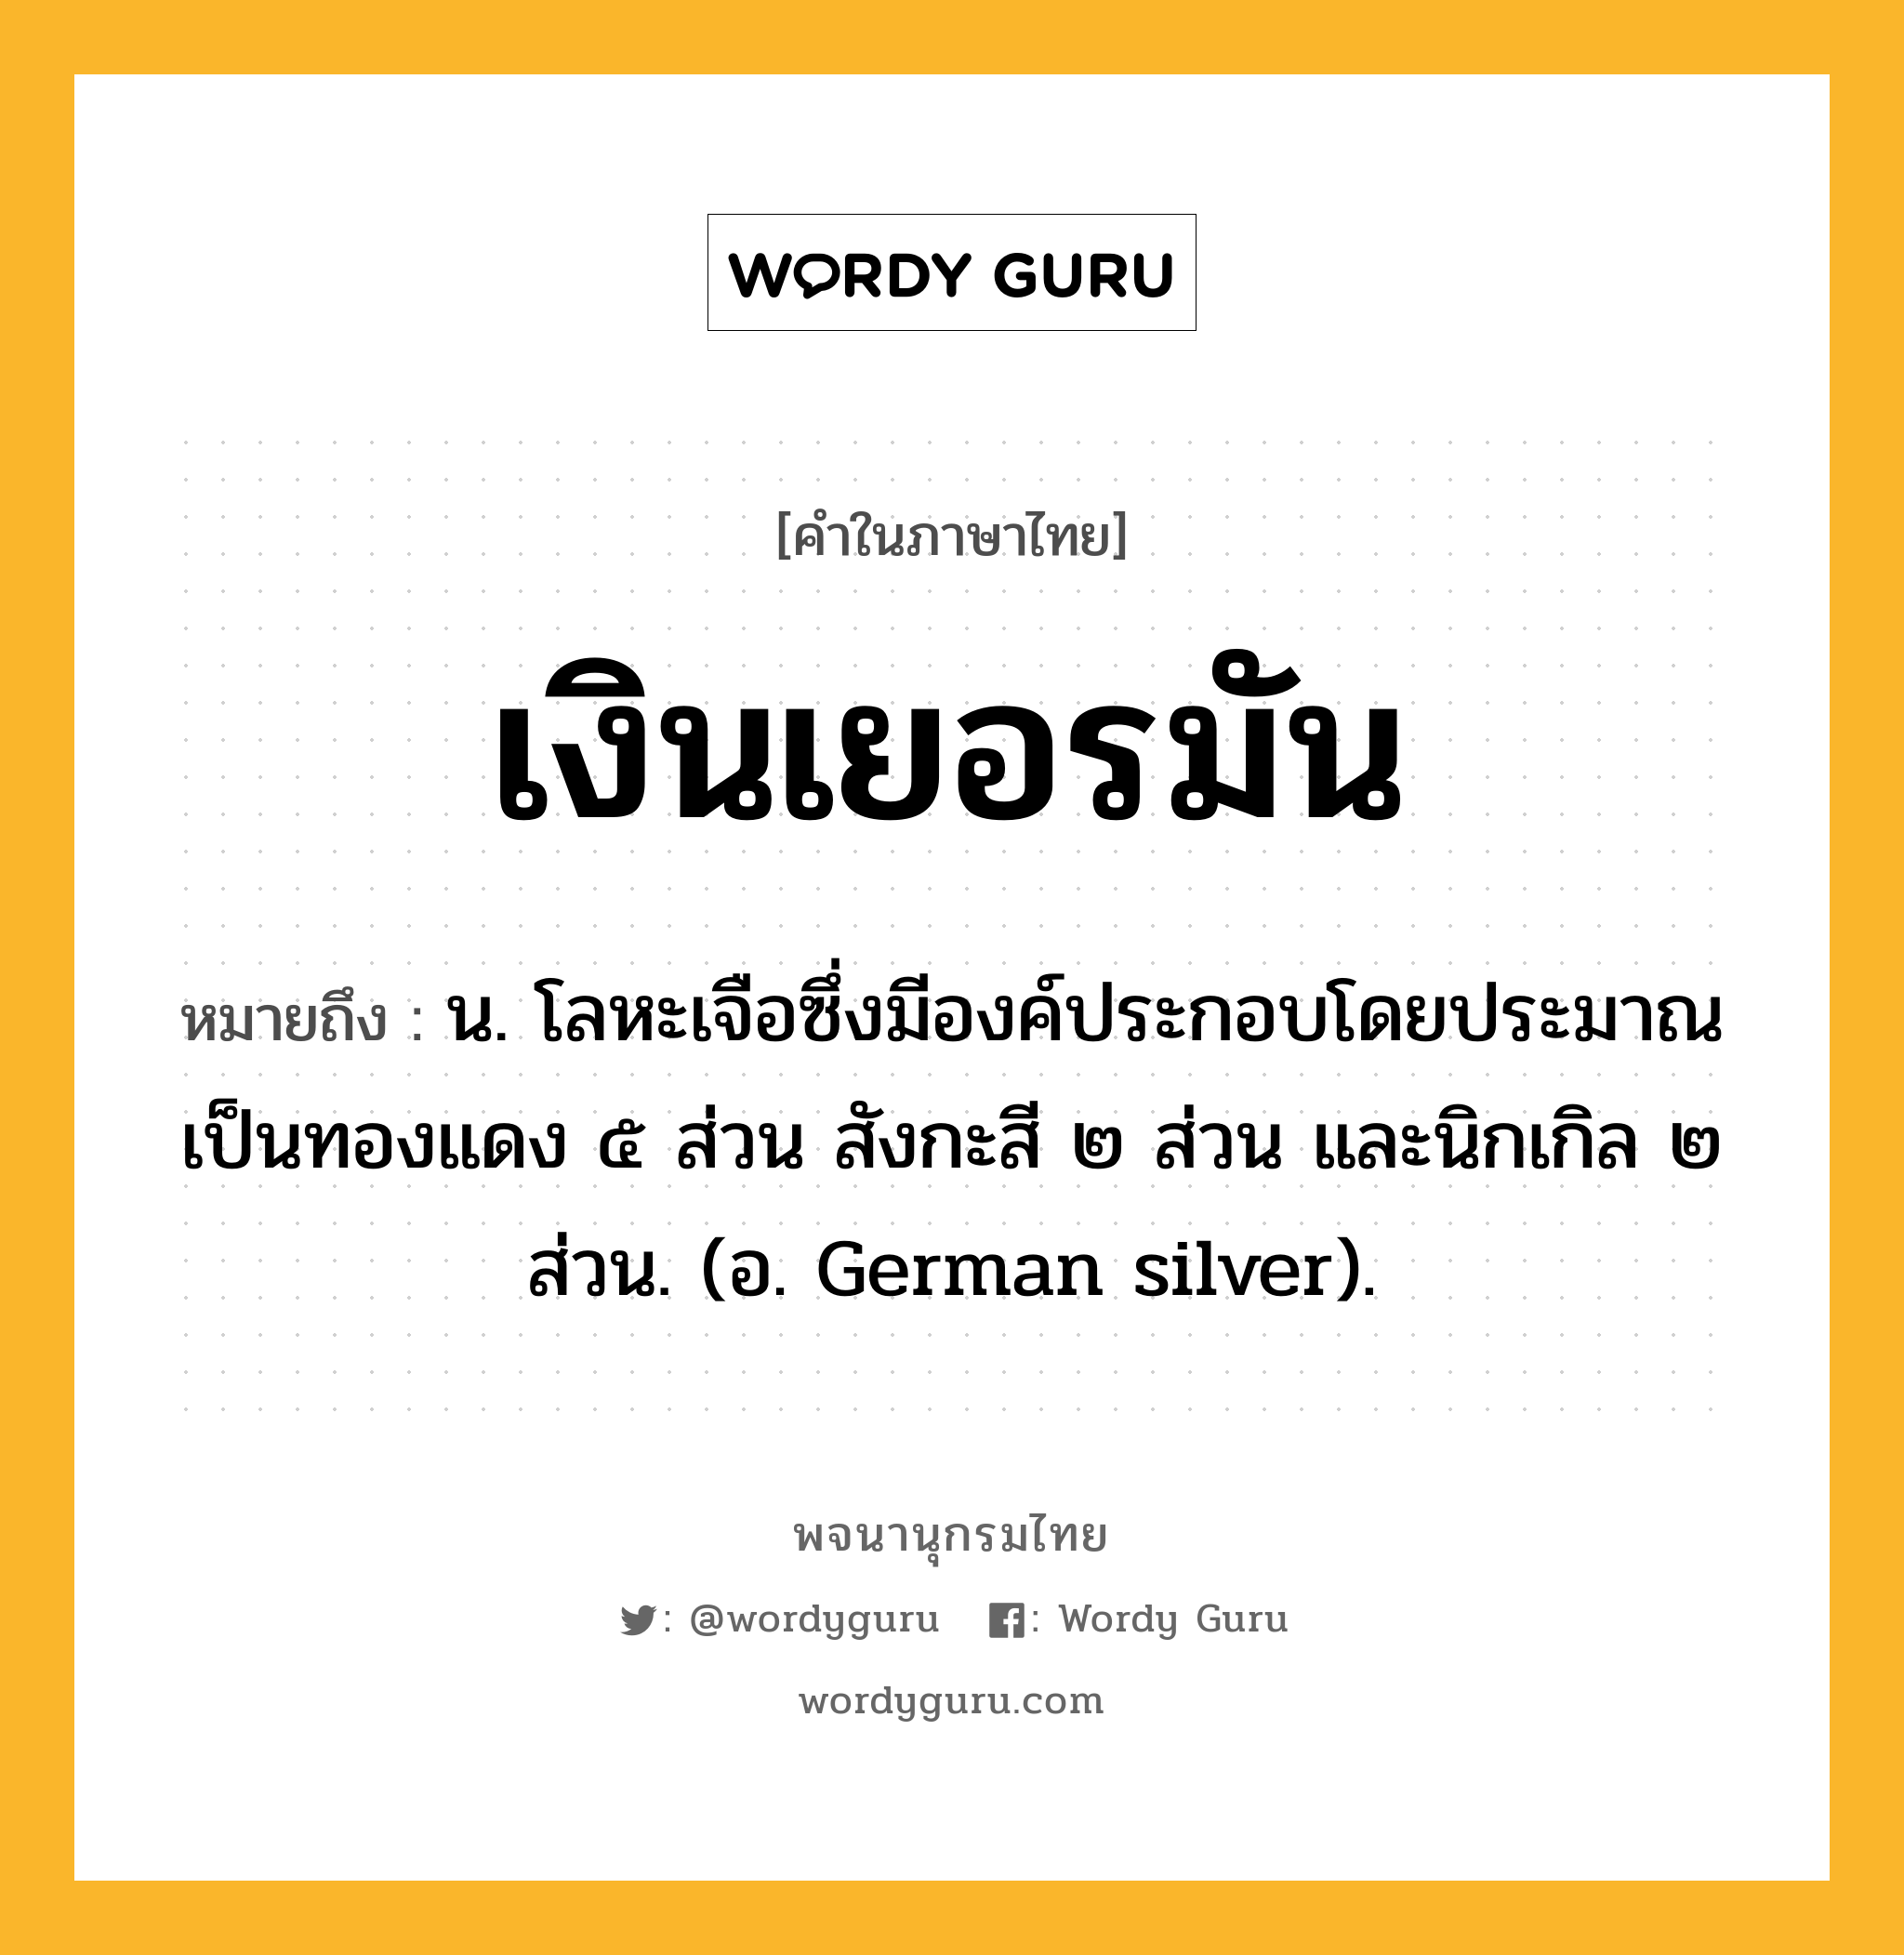 เงินเยอรมัน หมายถึงอะไร?, คำในภาษาไทย เงินเยอรมัน หมายถึง น. โลหะเจือซึ่งมีองค์ประกอบโดยประมาณเป็นทองแดง ๕ ส่วน สังกะสี ๒ ส่วน และนิกเกิล ๒ ส่วน. (อ. German silver).